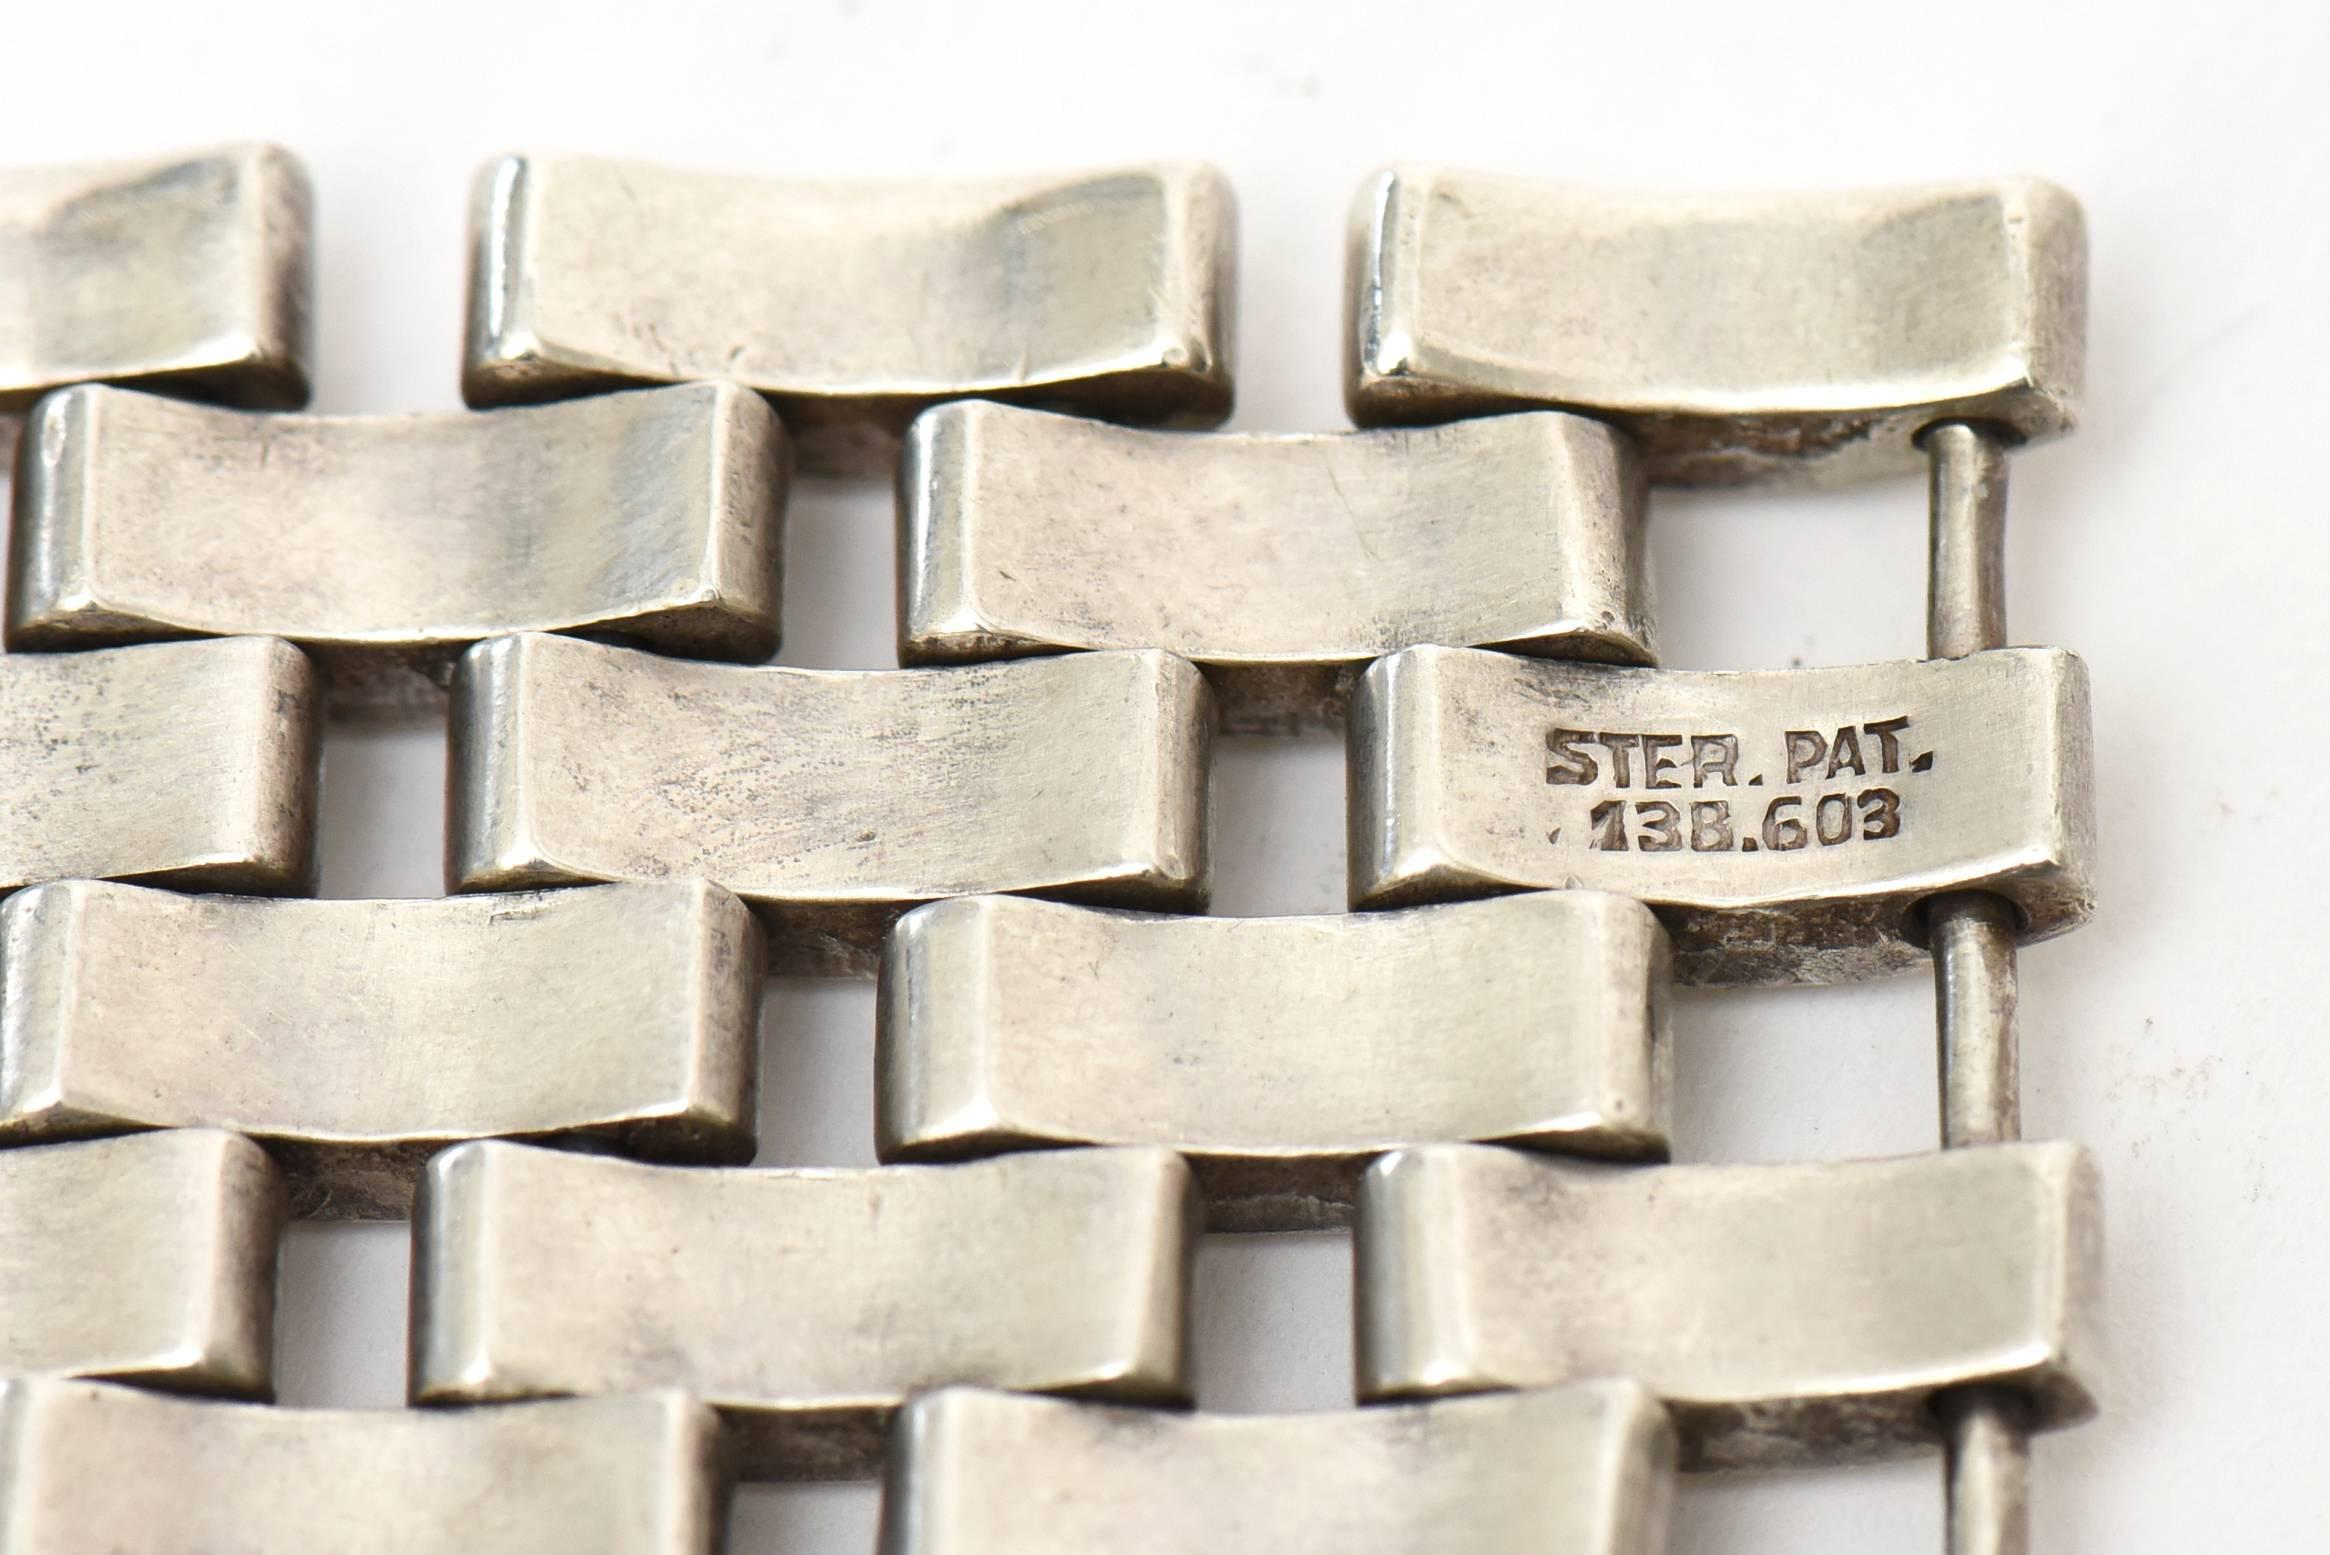  Sterling Silver Link Cuff Bracelet Vintage 3